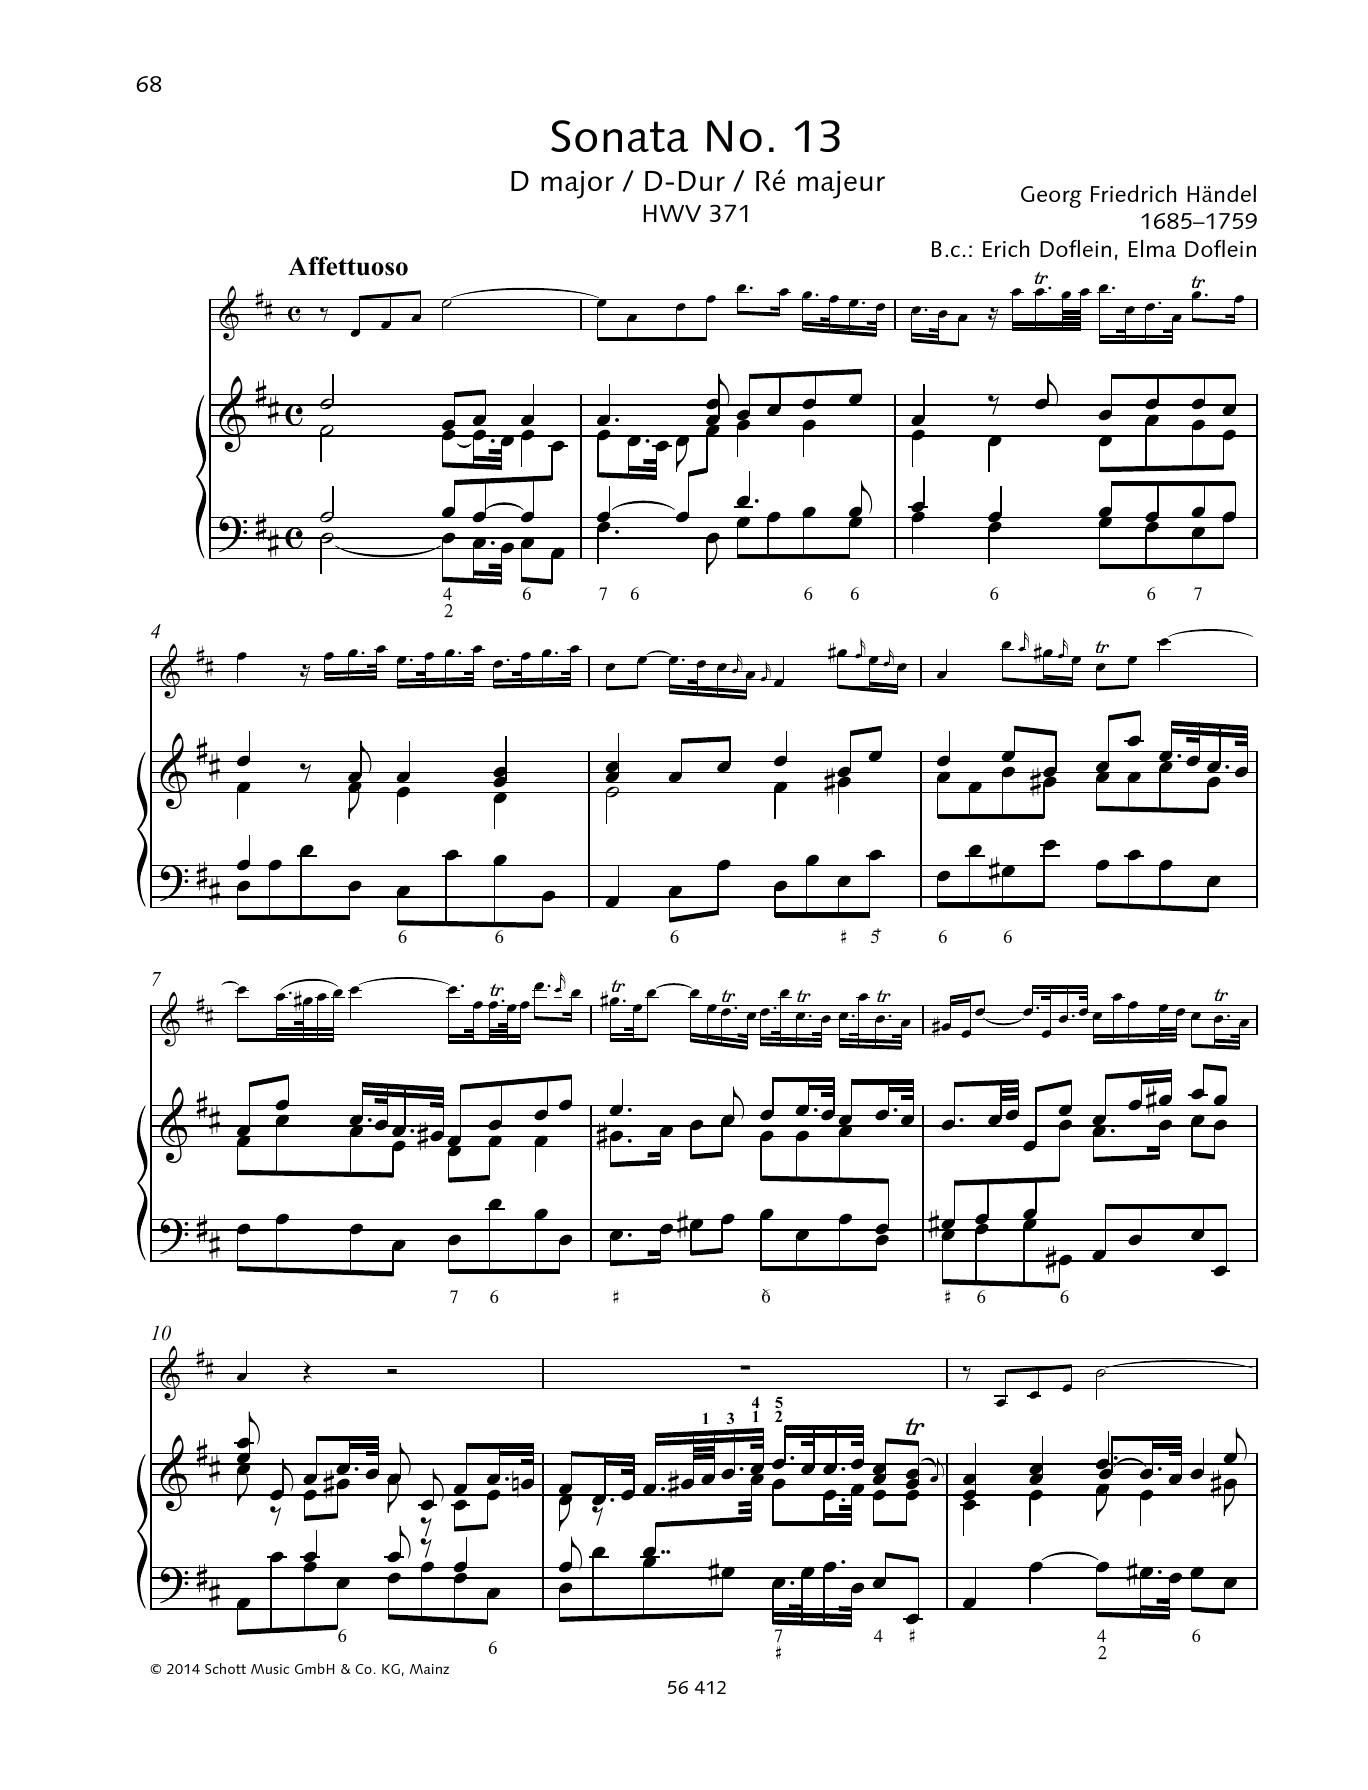 Sonata No. 13 D major sheet music